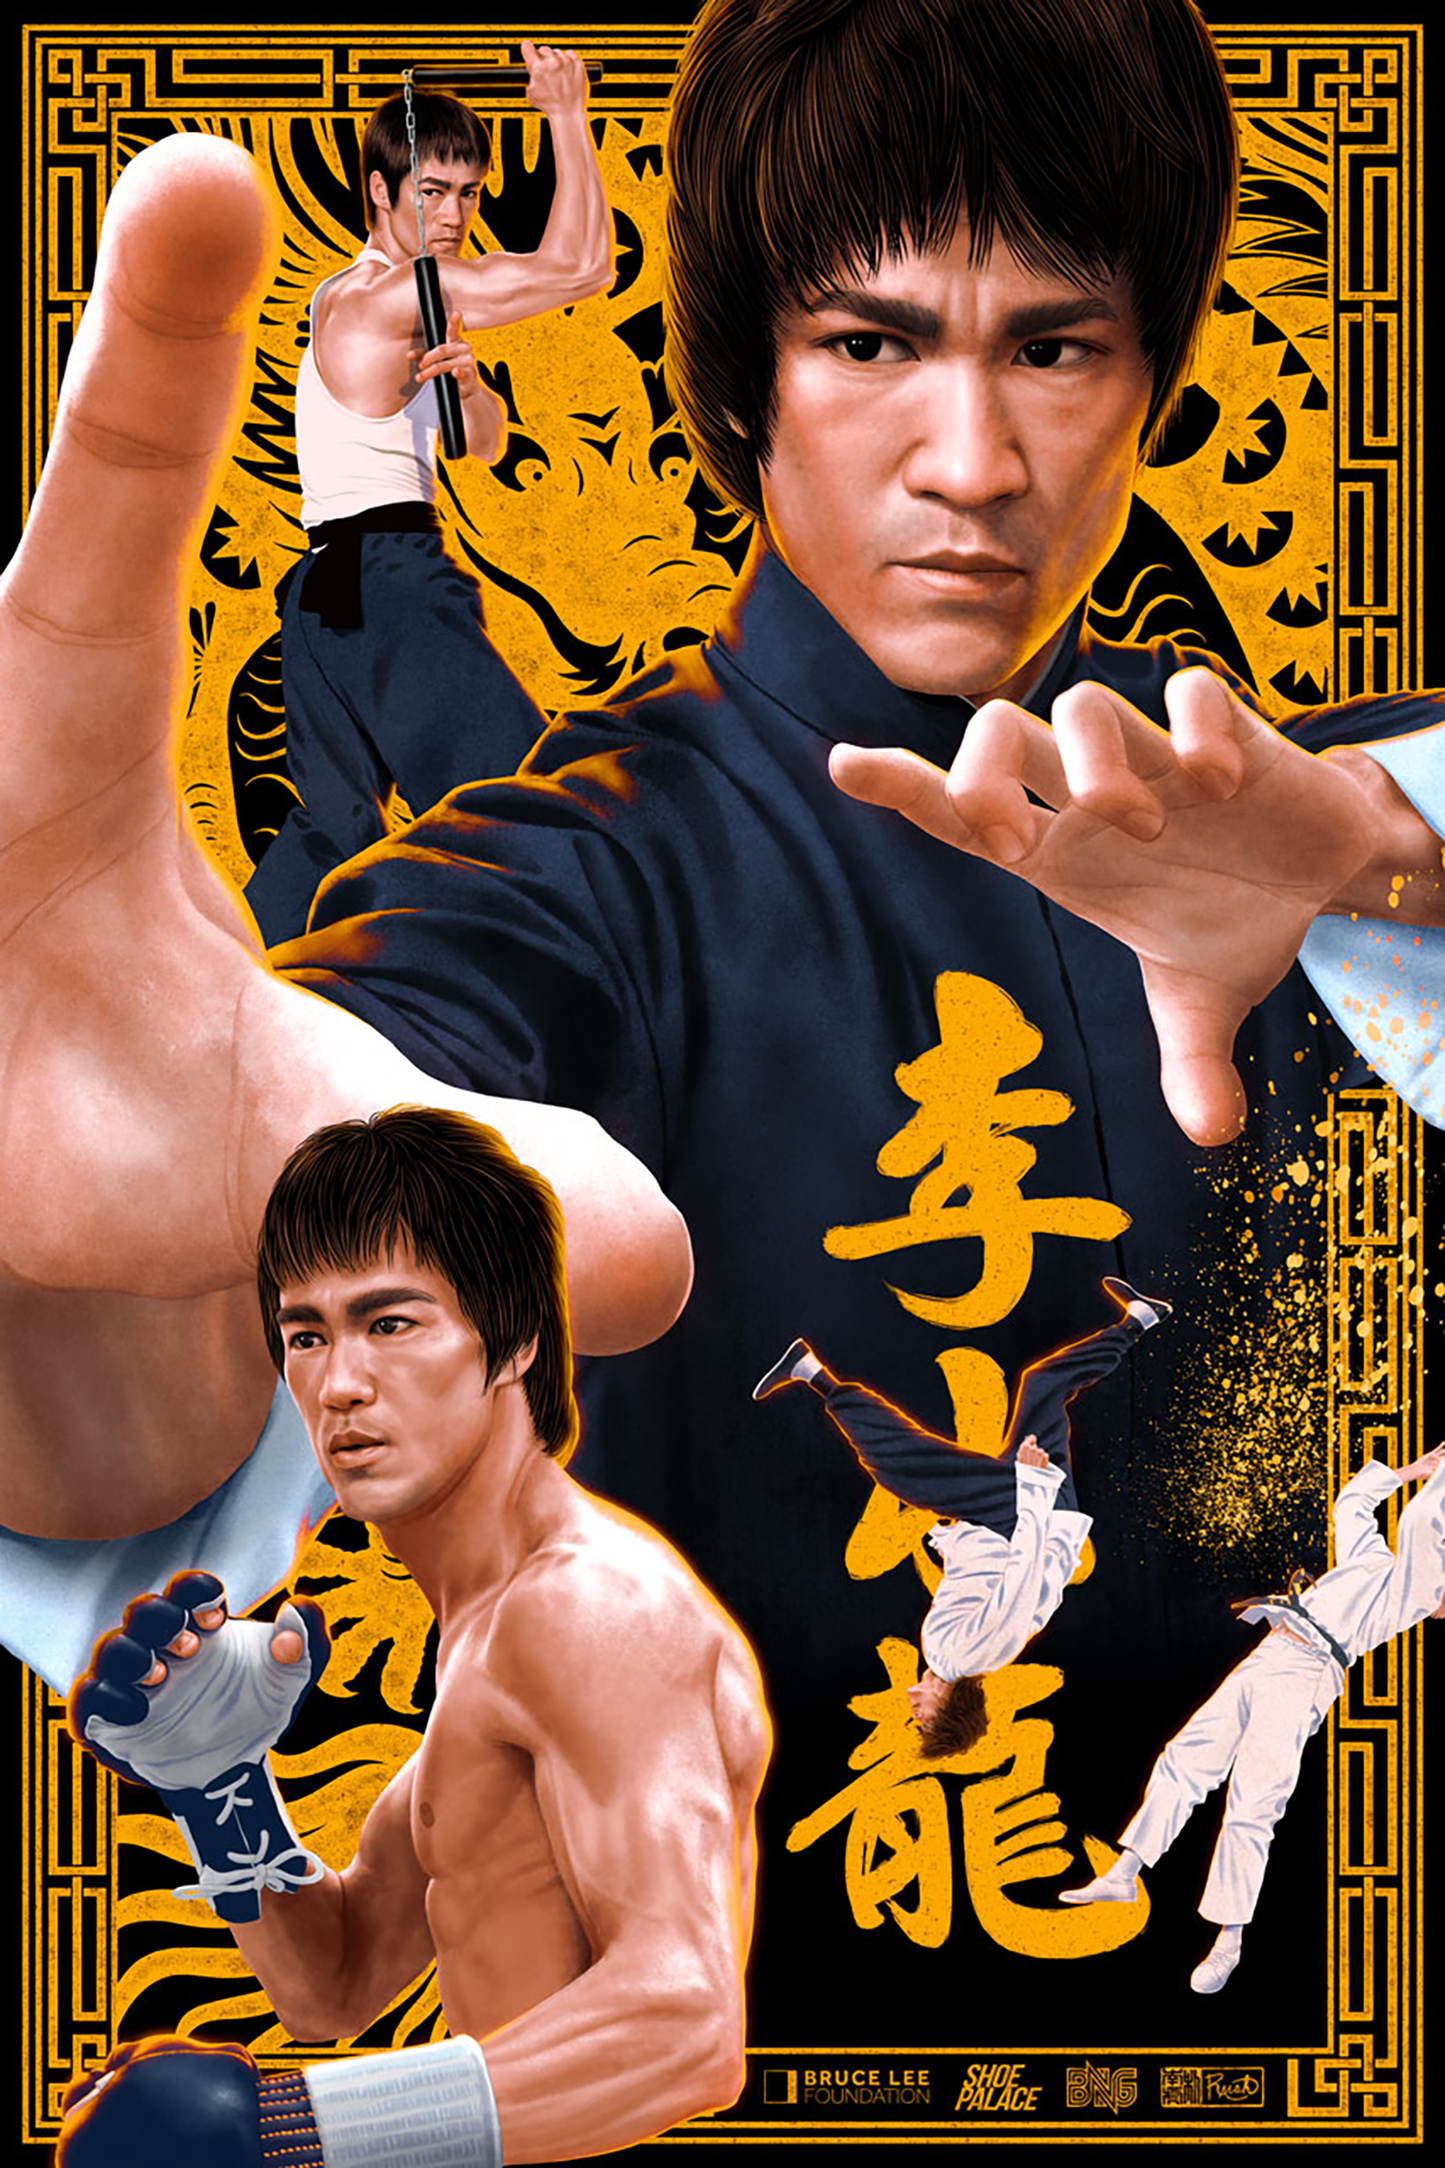 Jason Raish "Bruce Lee" Variant AP